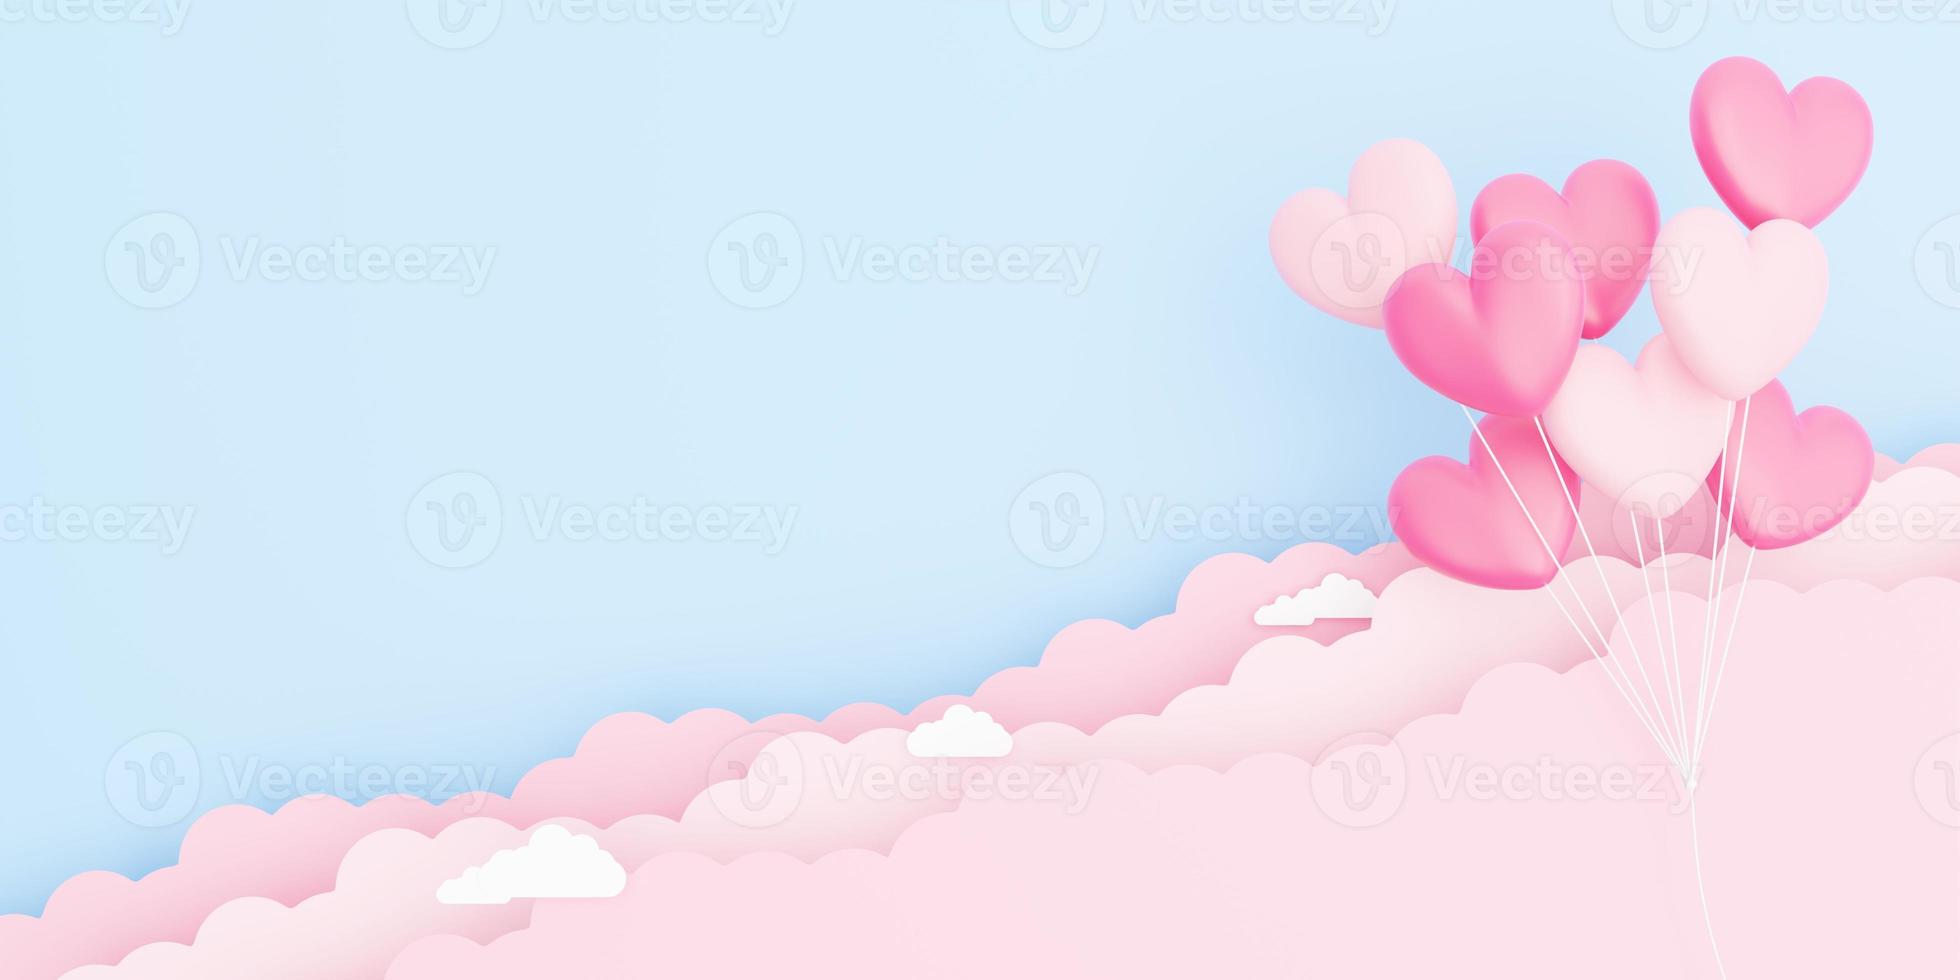 Valentinstag, Liebeskonzept Hintergrund, 3D-Darstellung von rosa herzförmigen Ballons Bouquet, das in den Himmel schwebt foto